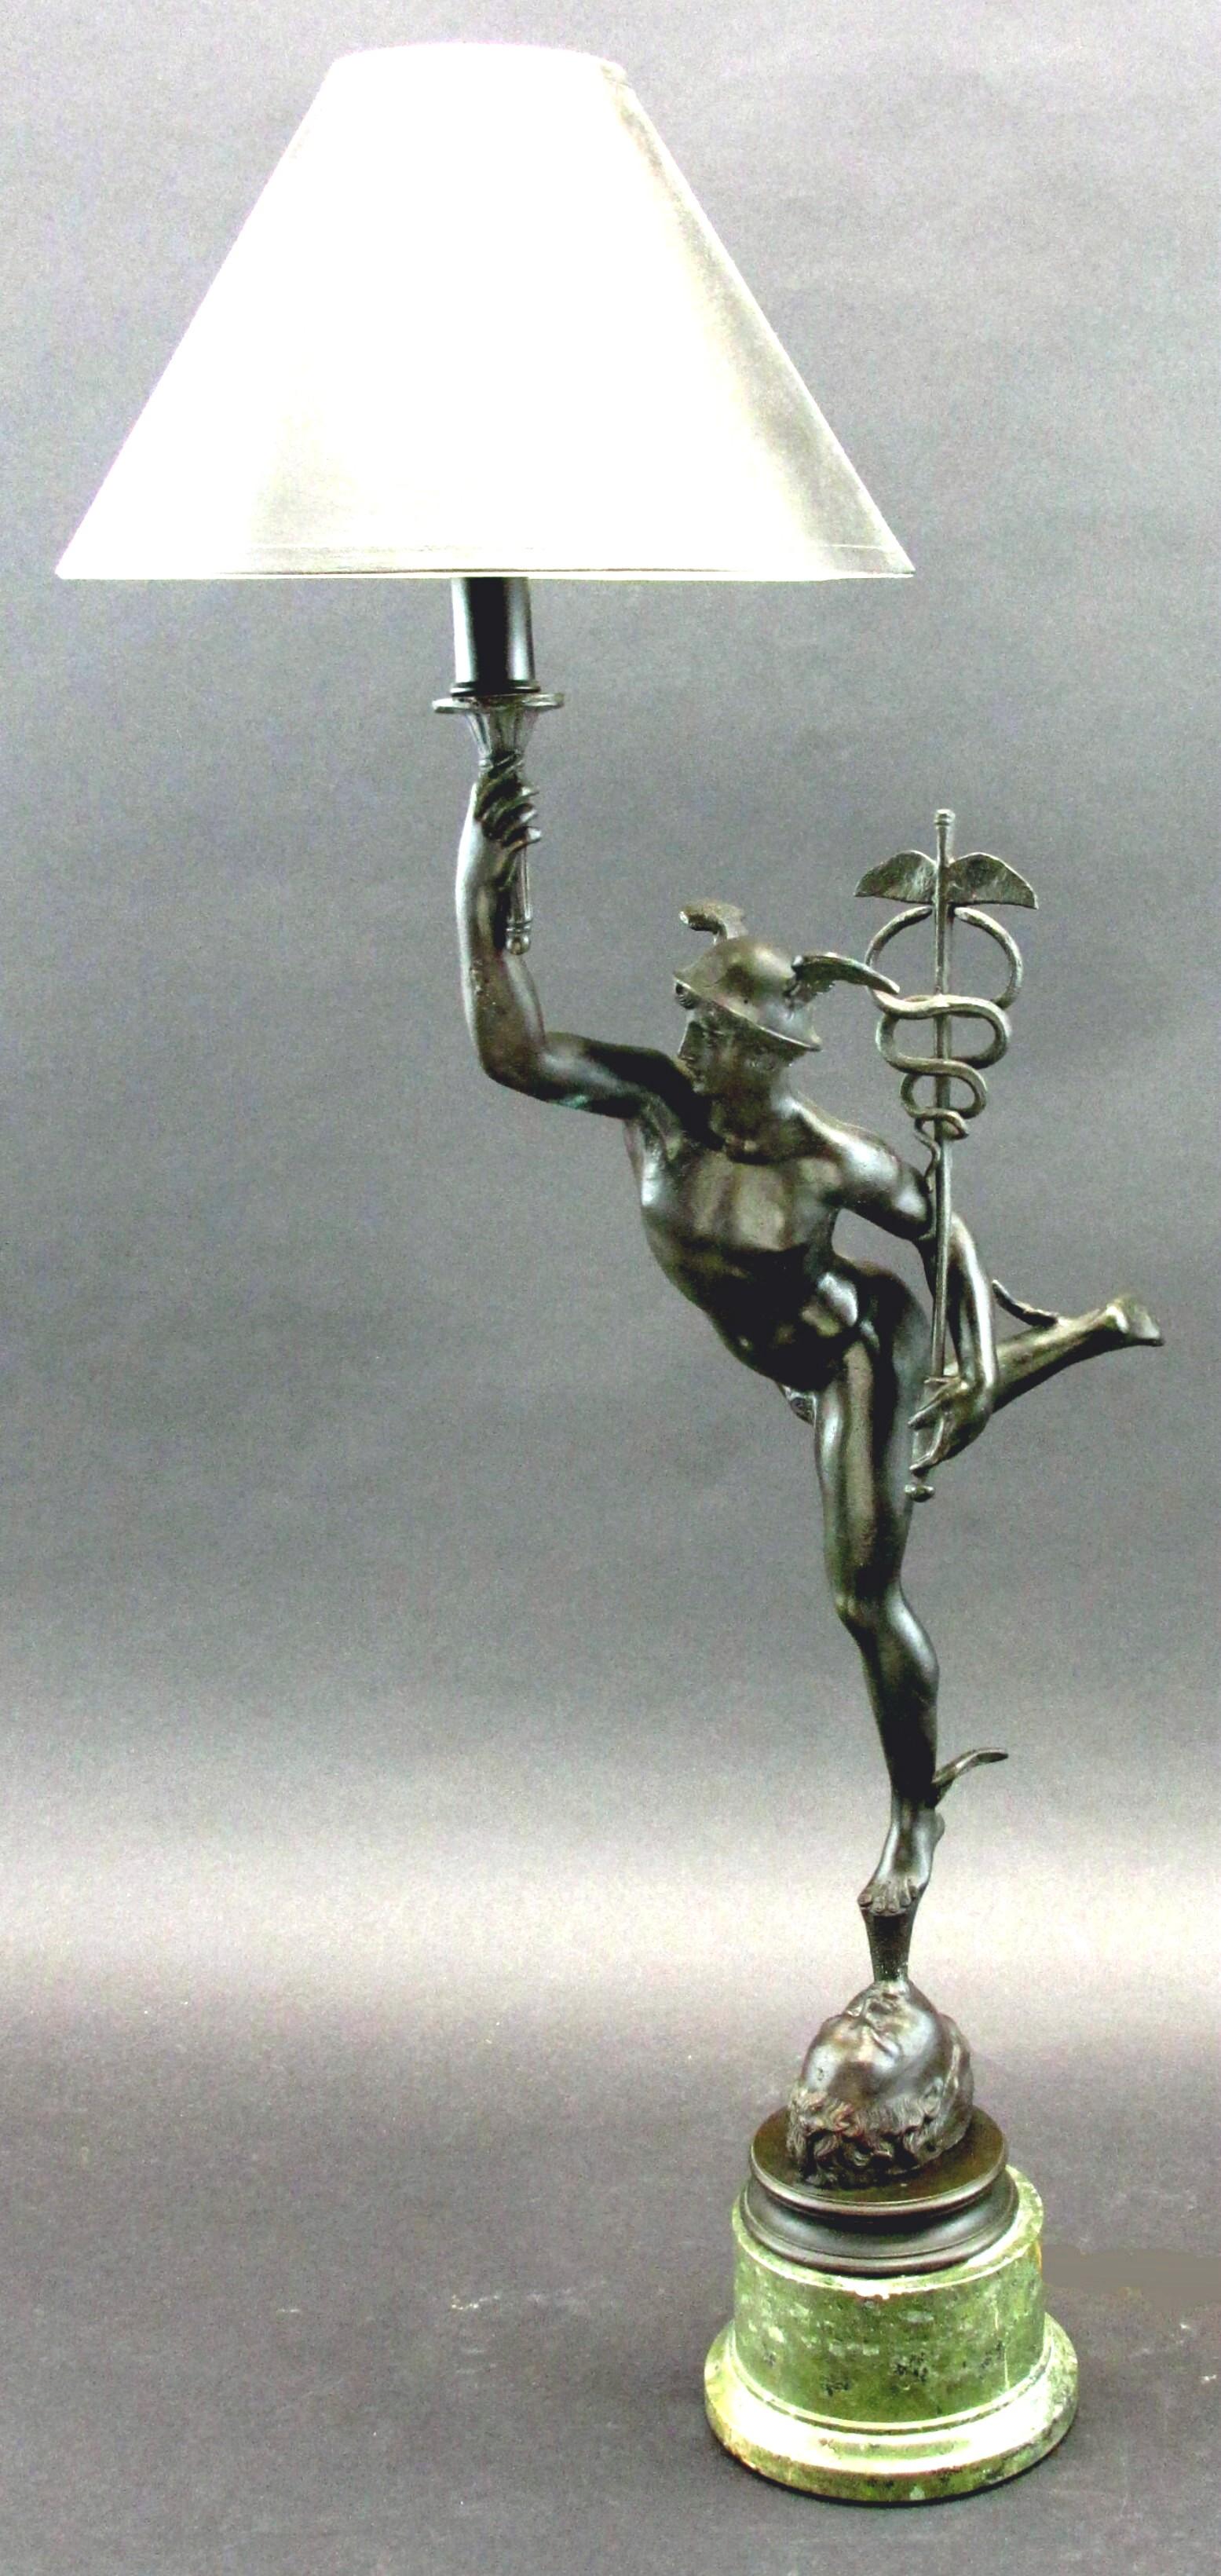 Die große und fein proportionierte Bronzefigur des Merkur - römischer Gott des Überflusses und des wirtschaftlichen Erfolgs - steht auf dem Maul des Äolus - Herrscher der vier Winde - und hält in der einen Hand einen Caduceus, den anderen Arm zum